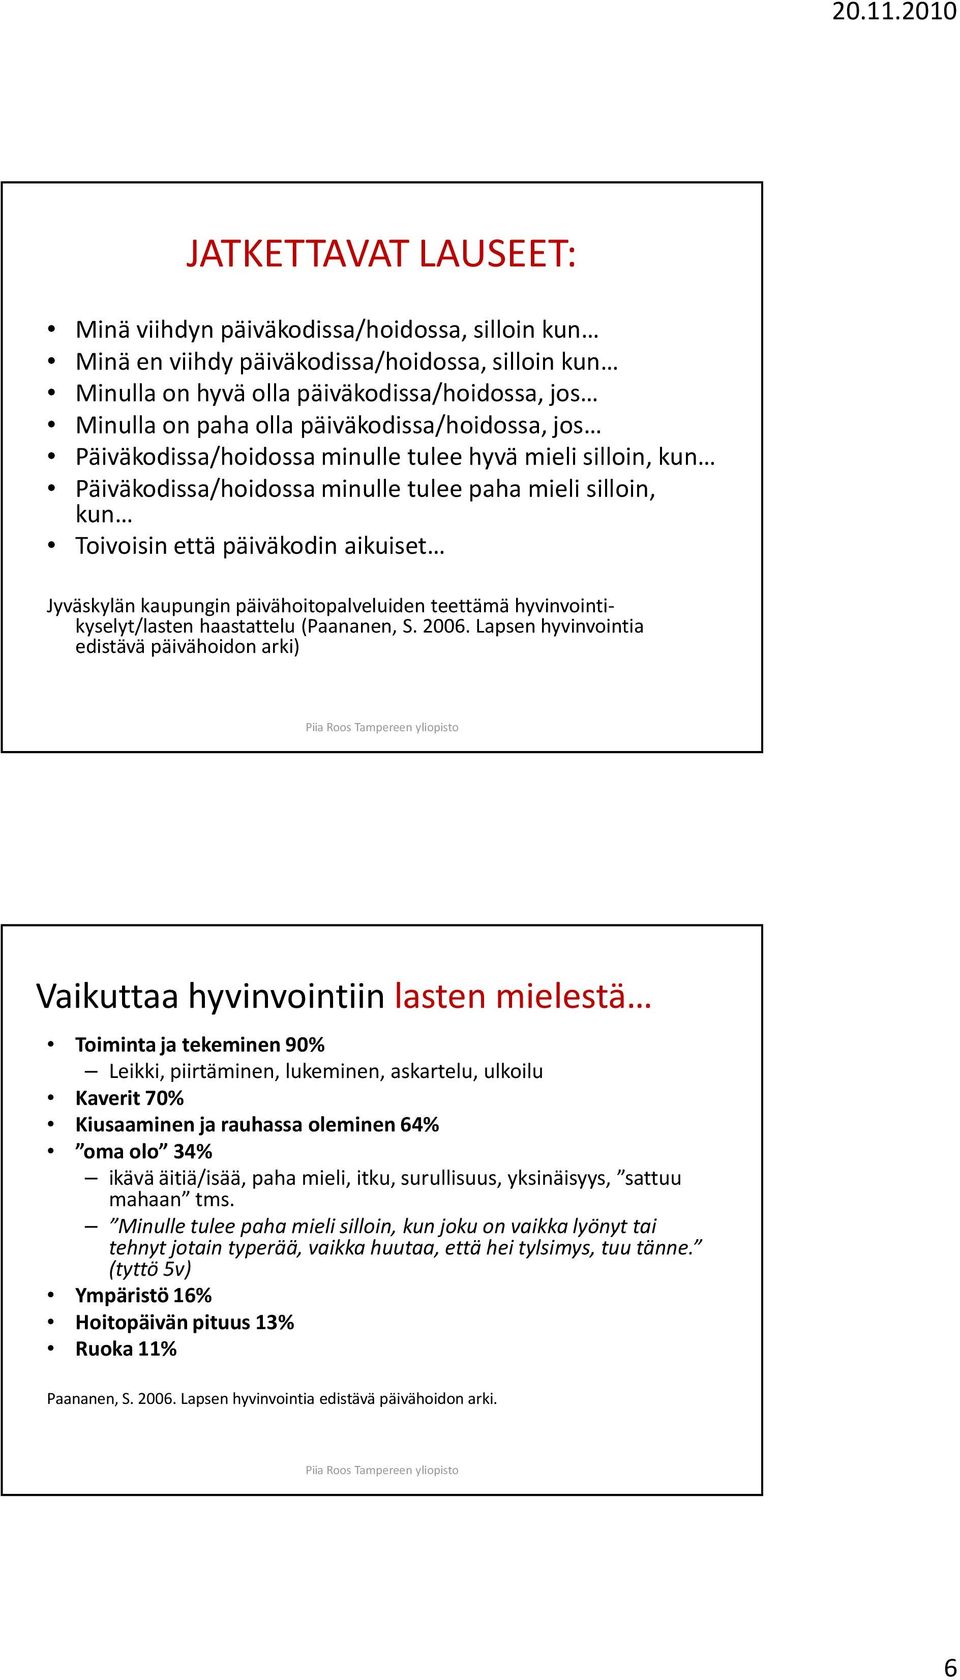 kaupungin päivähoitopalveluiden teettämä hyvinvointikyselyt/lasten haastattelu (Paananen, S. 2006.